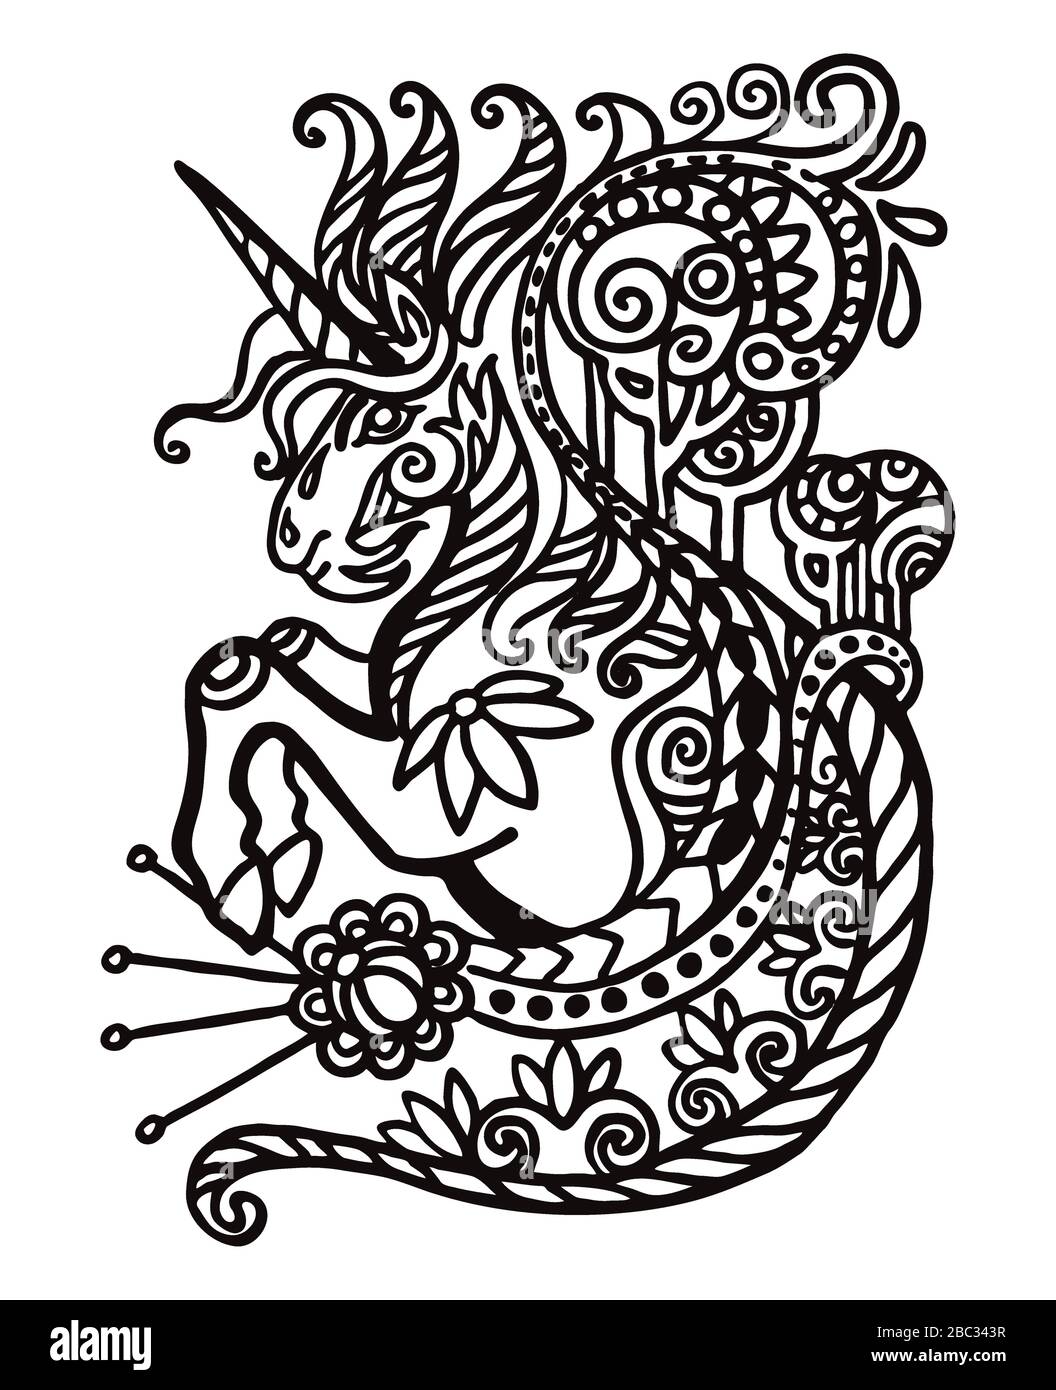 Dessin vectoriel main zentangle doodle coloriage antistress avec ornement unicorn isolé sur fond blanc. Illustration pour décorer un tee-shirt, annonce Illustration de Vecteur